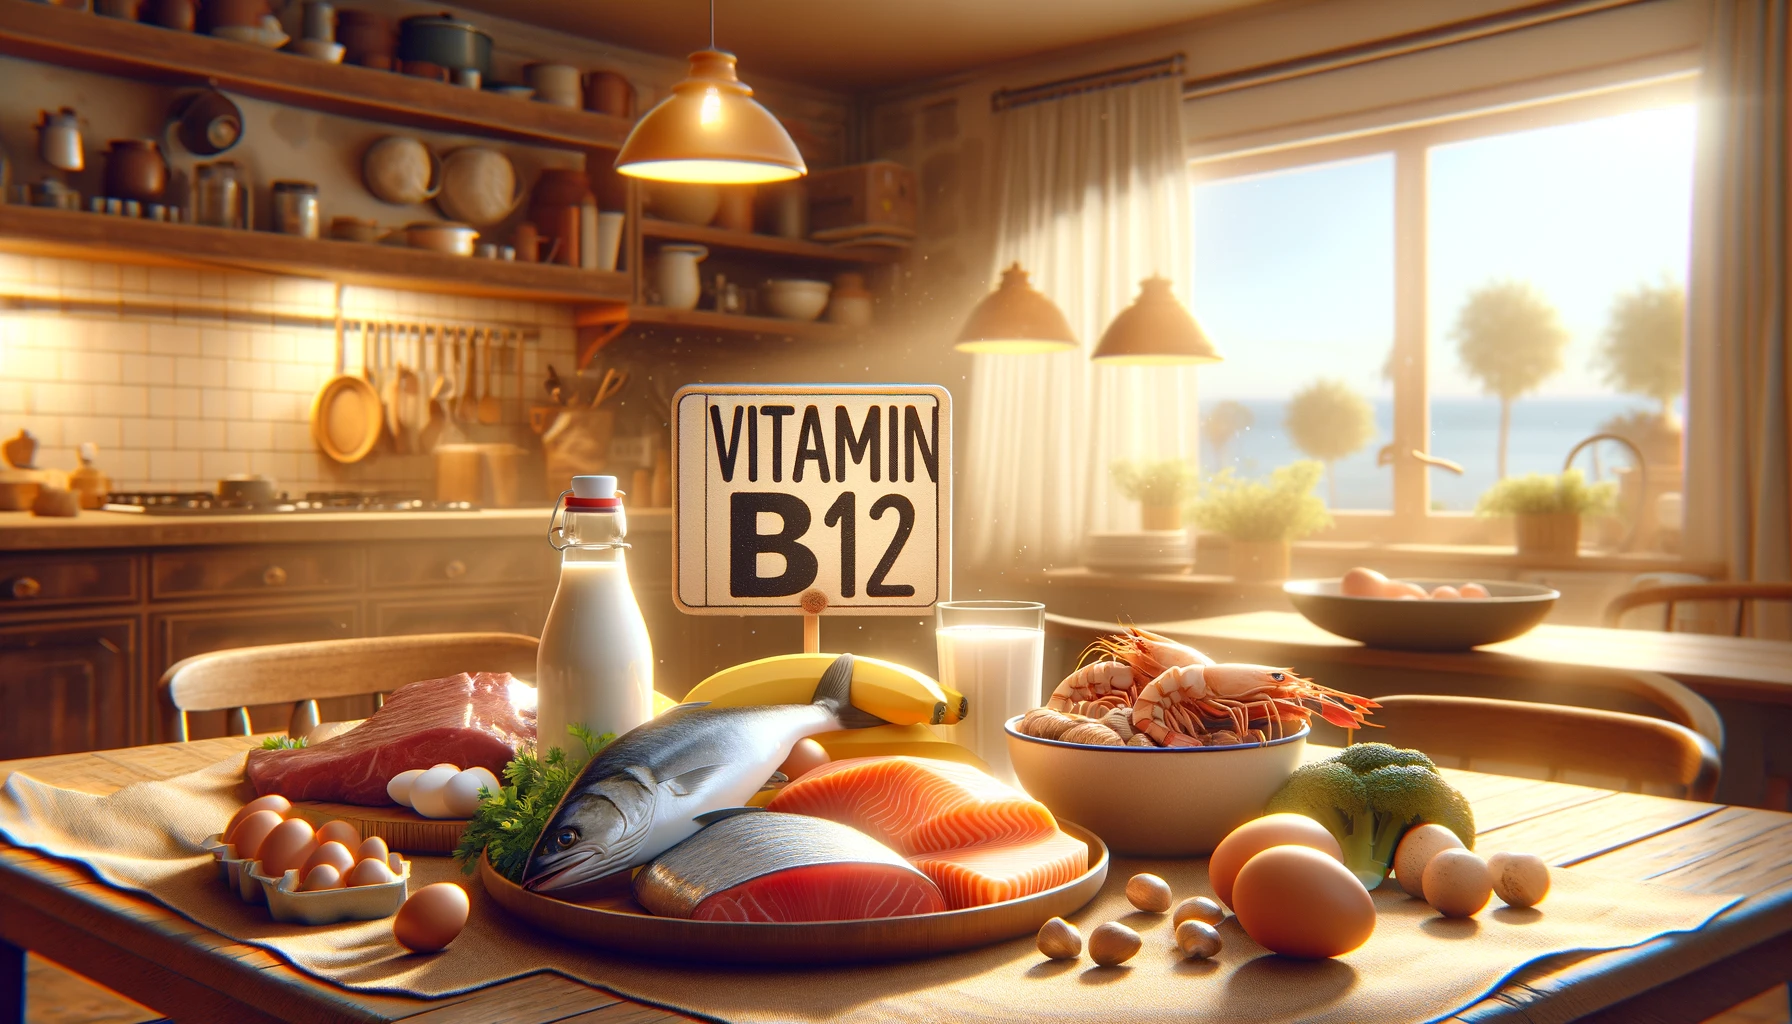 ビタミンB12を知るアイキャッチ